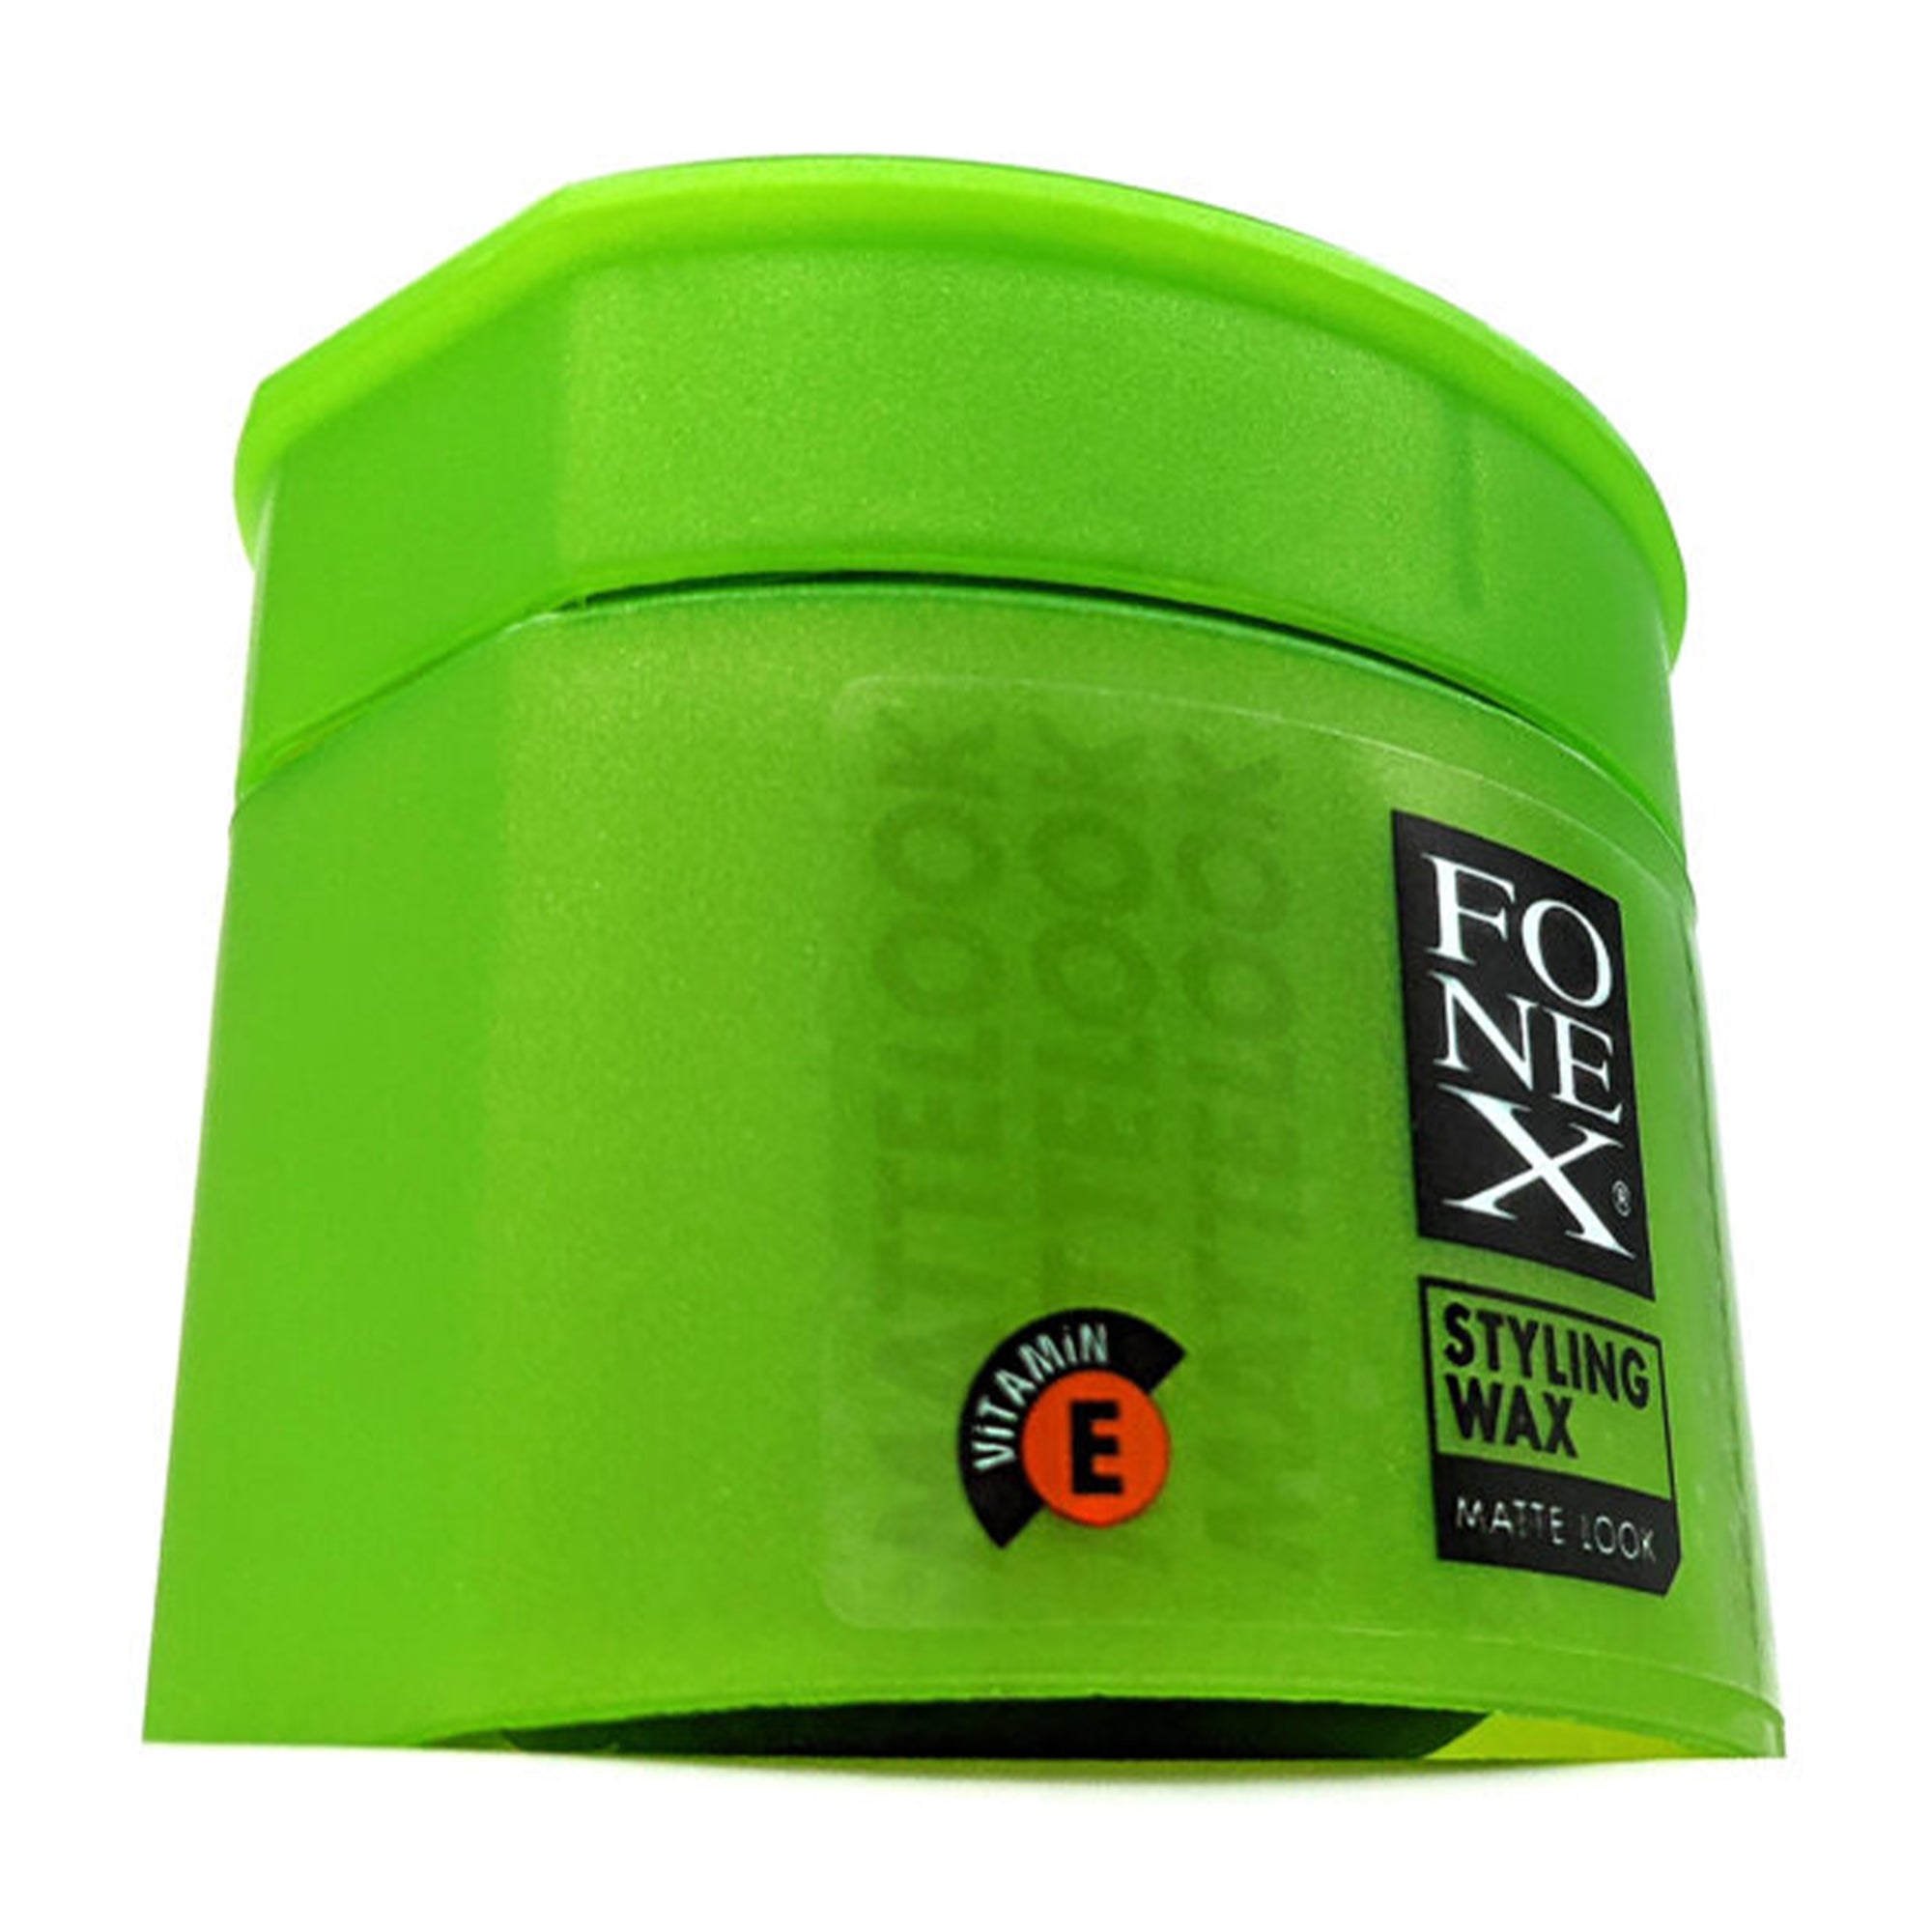 Fonex - Hair Styling Wax Matte Look 100ml